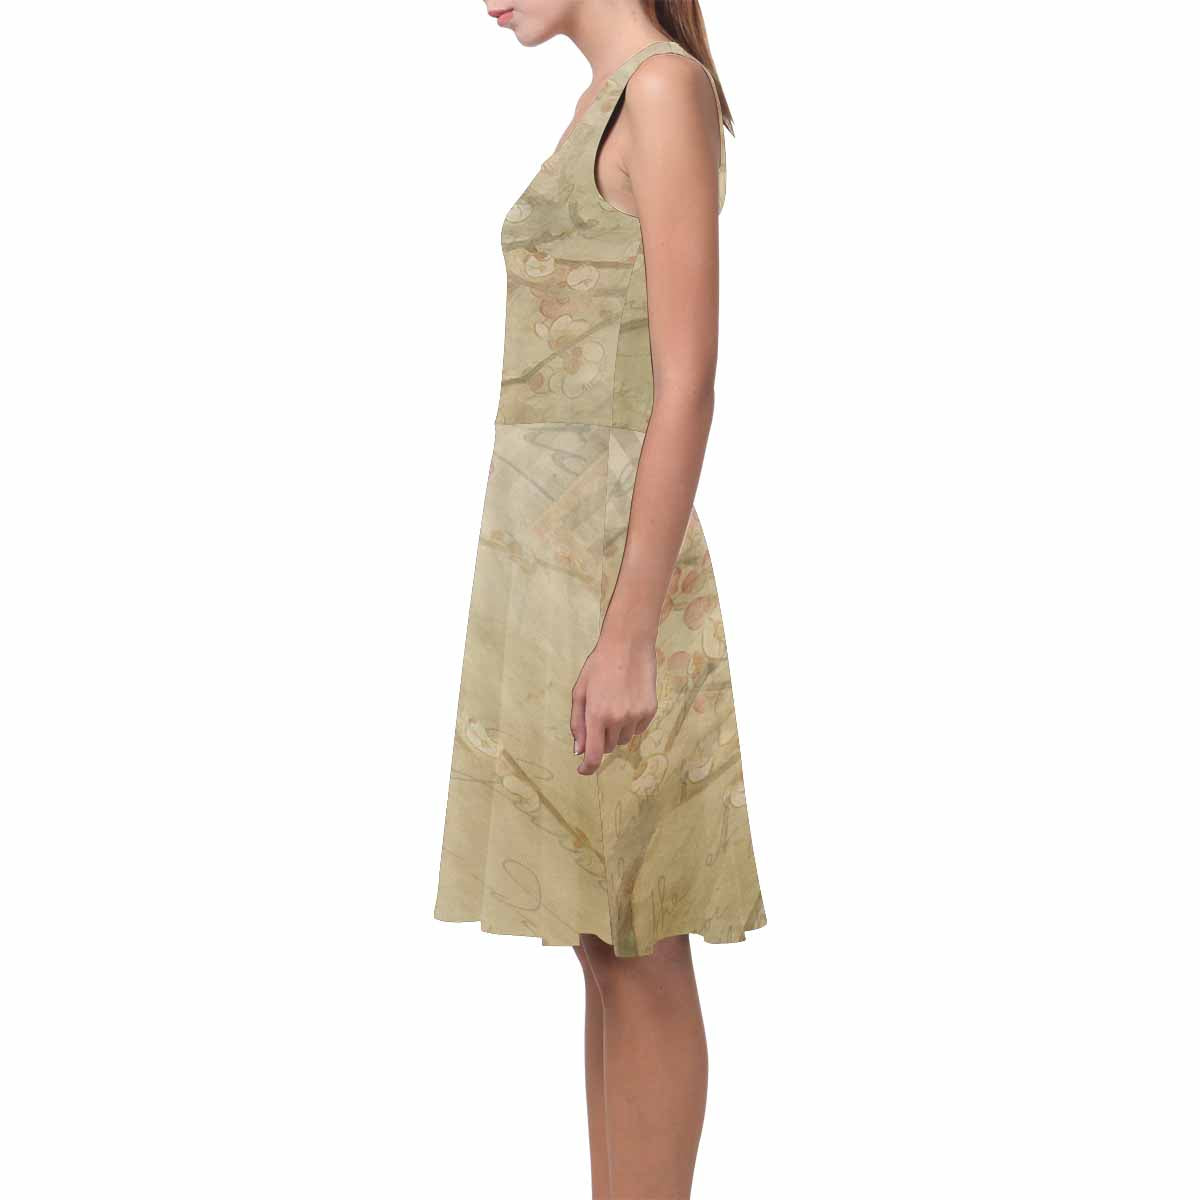 Antique General summer dress, MODEL 09534, design 25